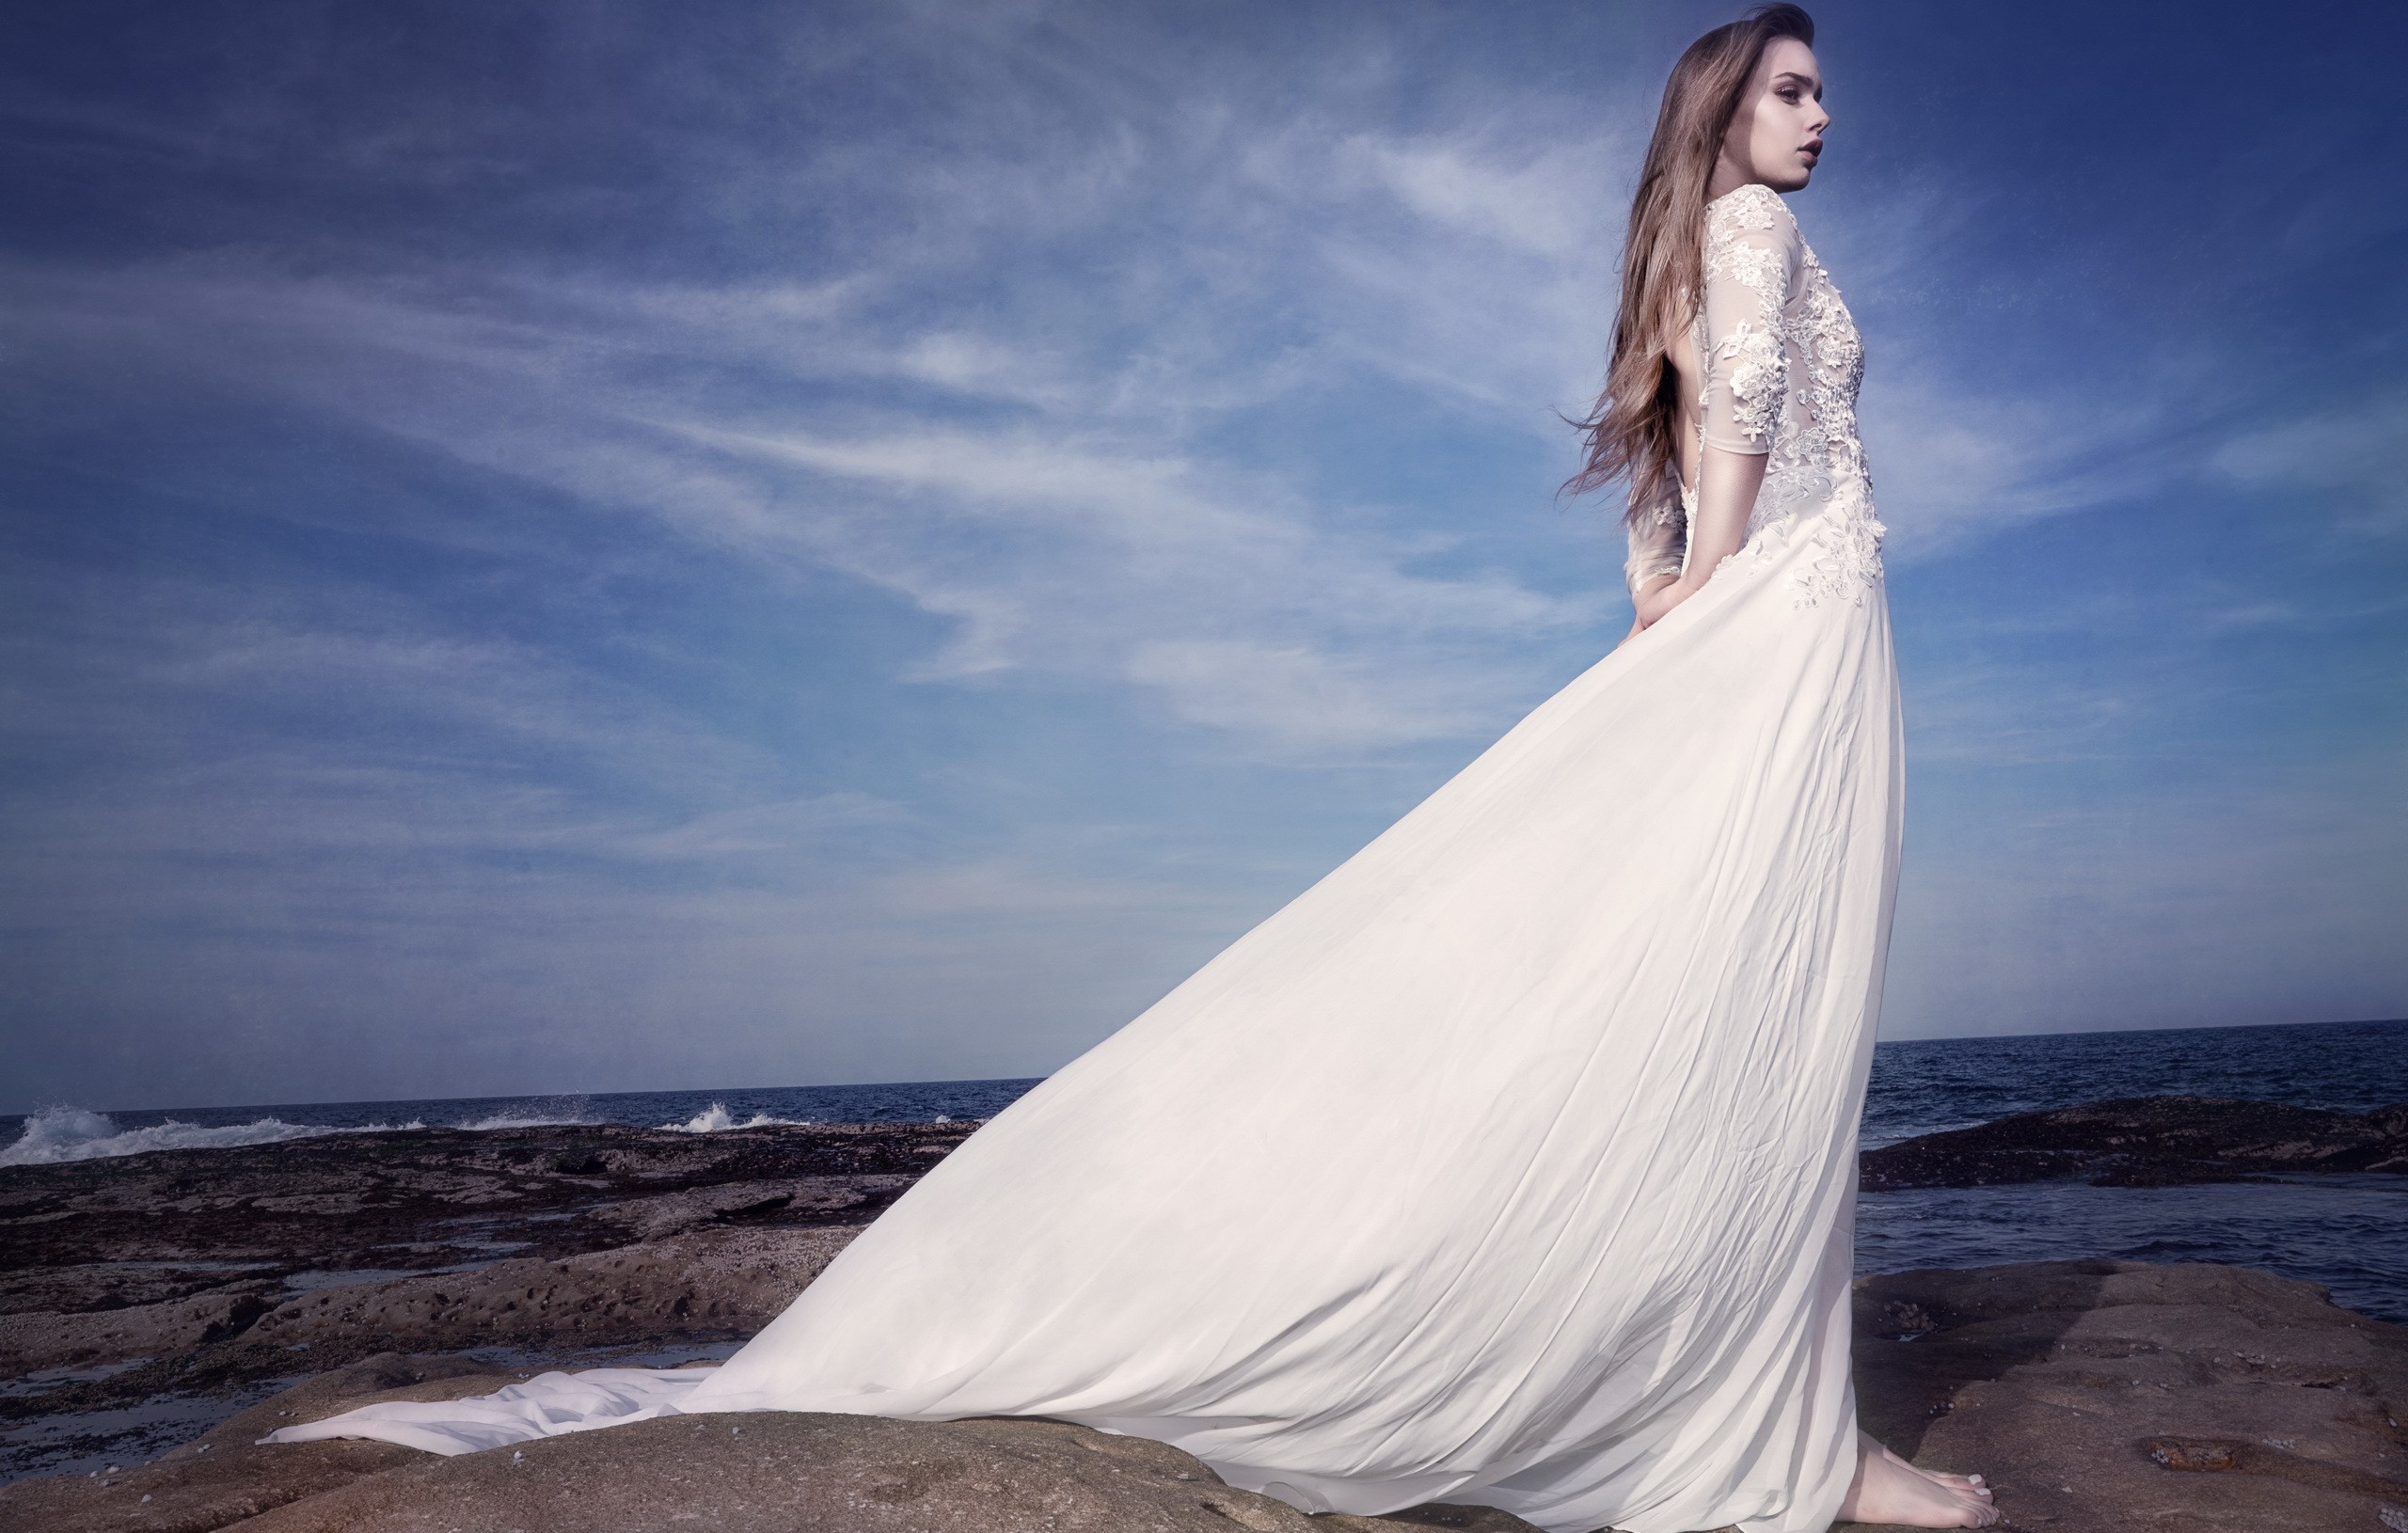 Rüyada Beyaz Elbiseli Kadın Görmek - Rüyalar Dünyası